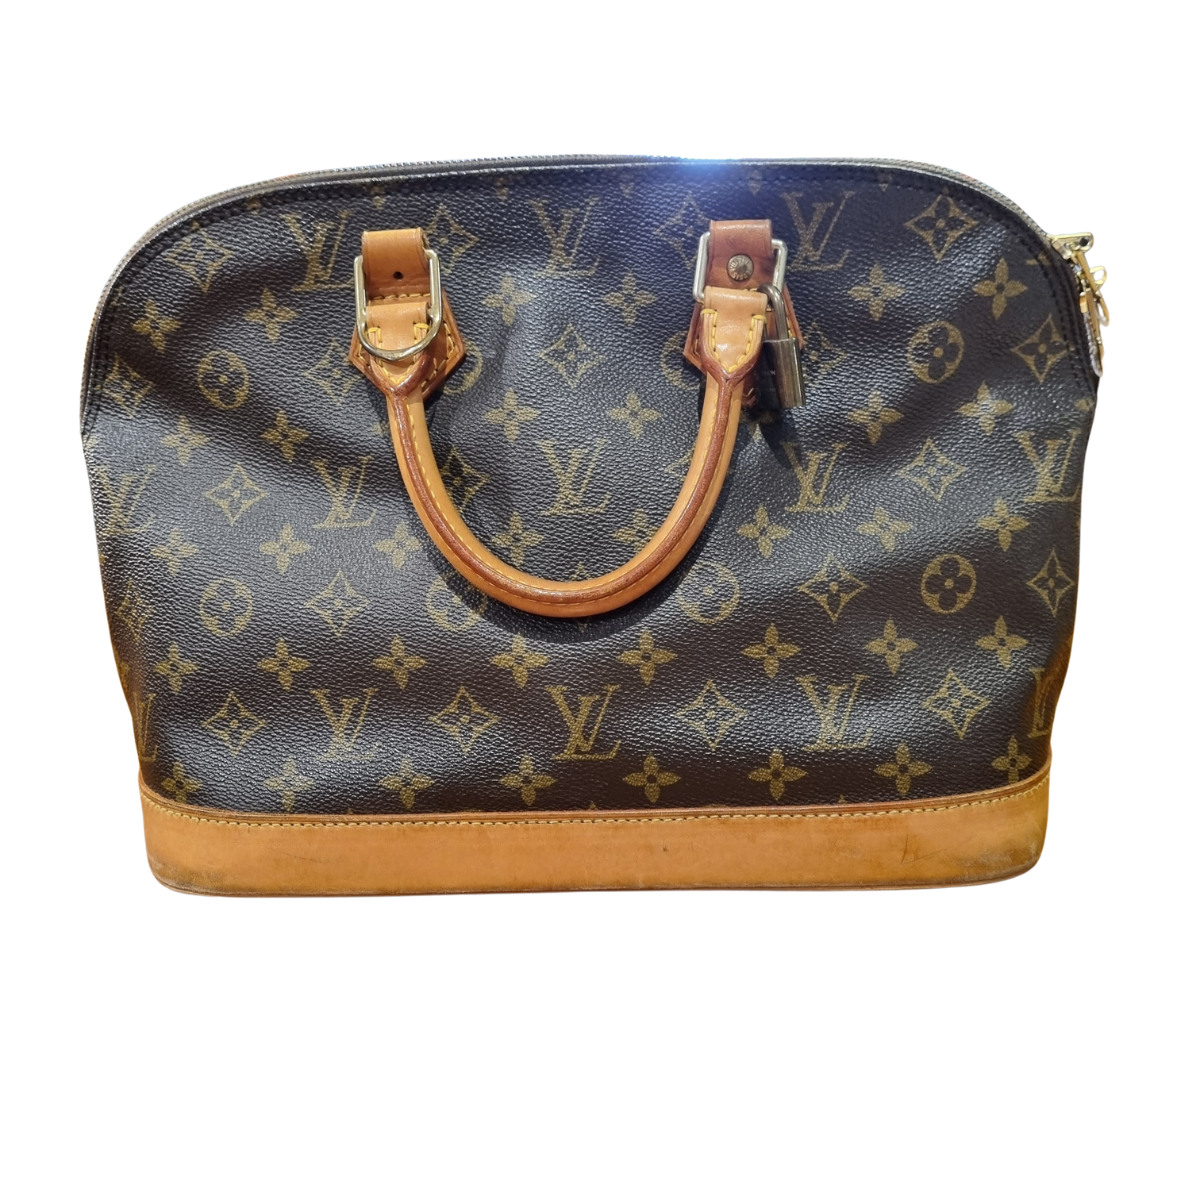 Vintage Luxury bag Louis Vuitton modello Alma